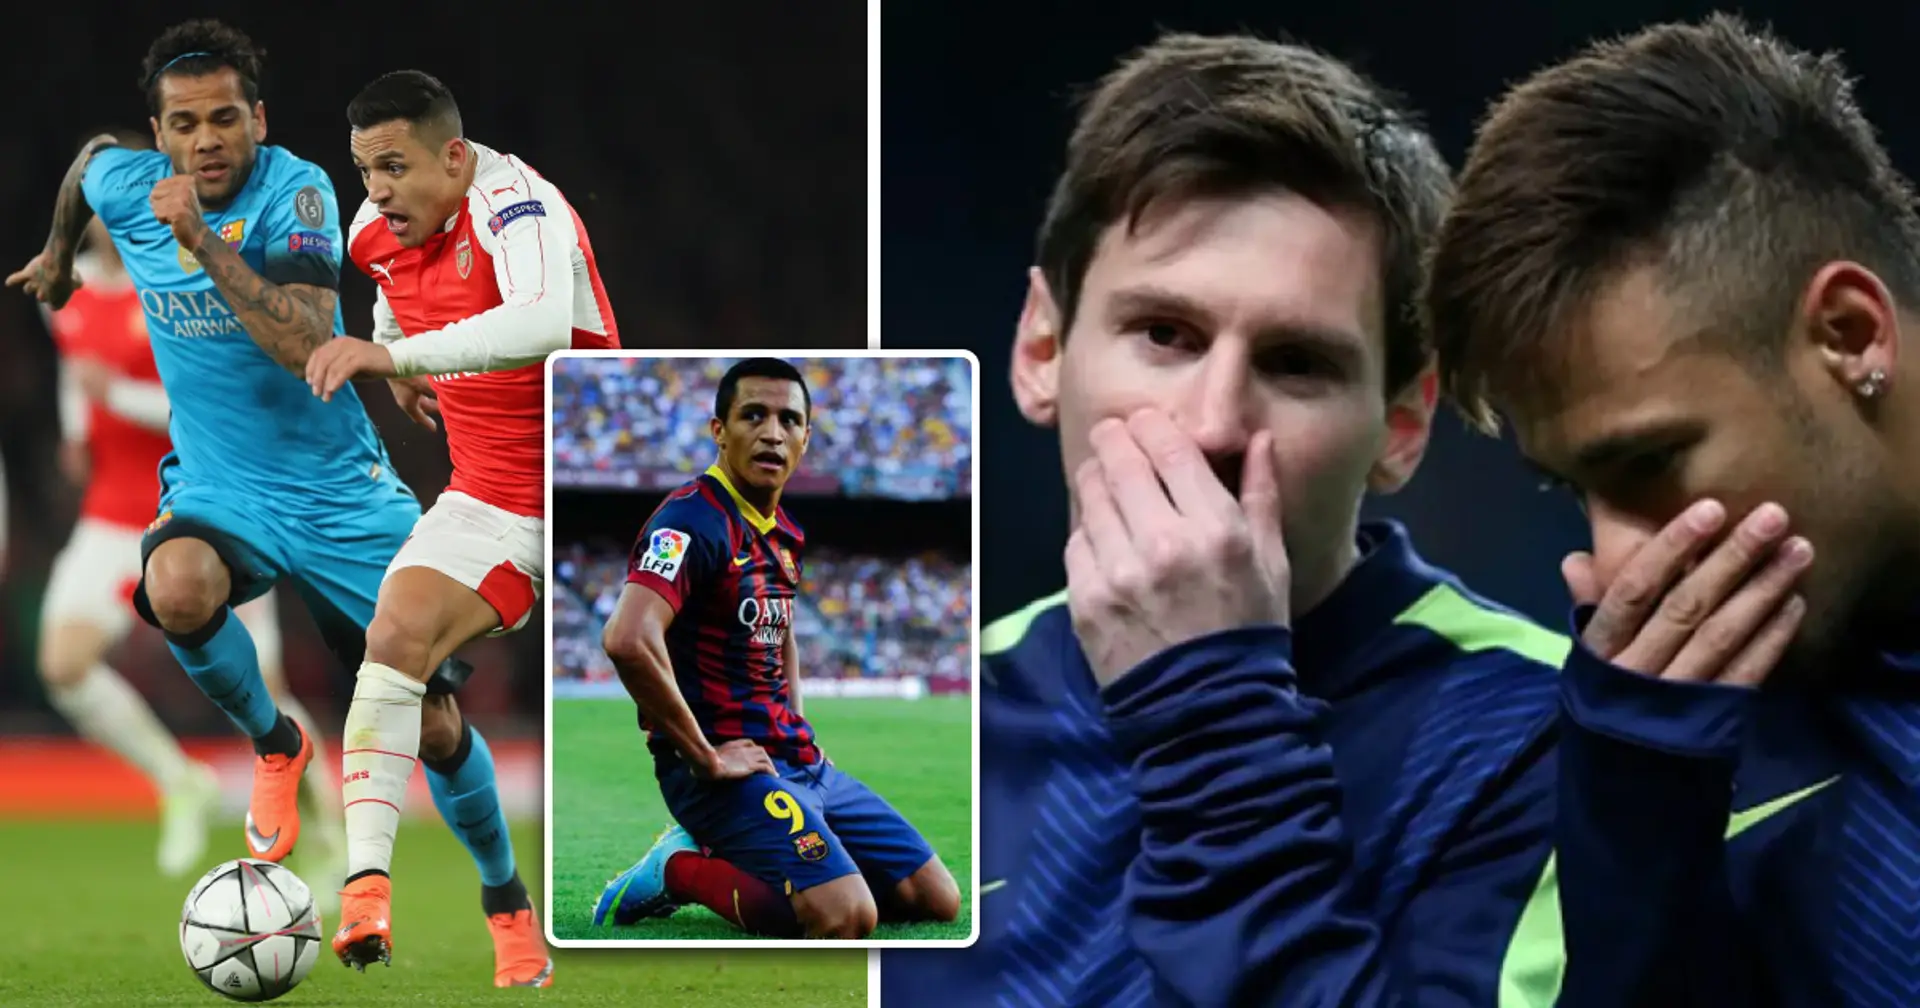 "Il ne suffit pas d'être une bête": Dani Alves a expliqué pourquoi Sanchez n'était pas à la hauteur de Barcelone